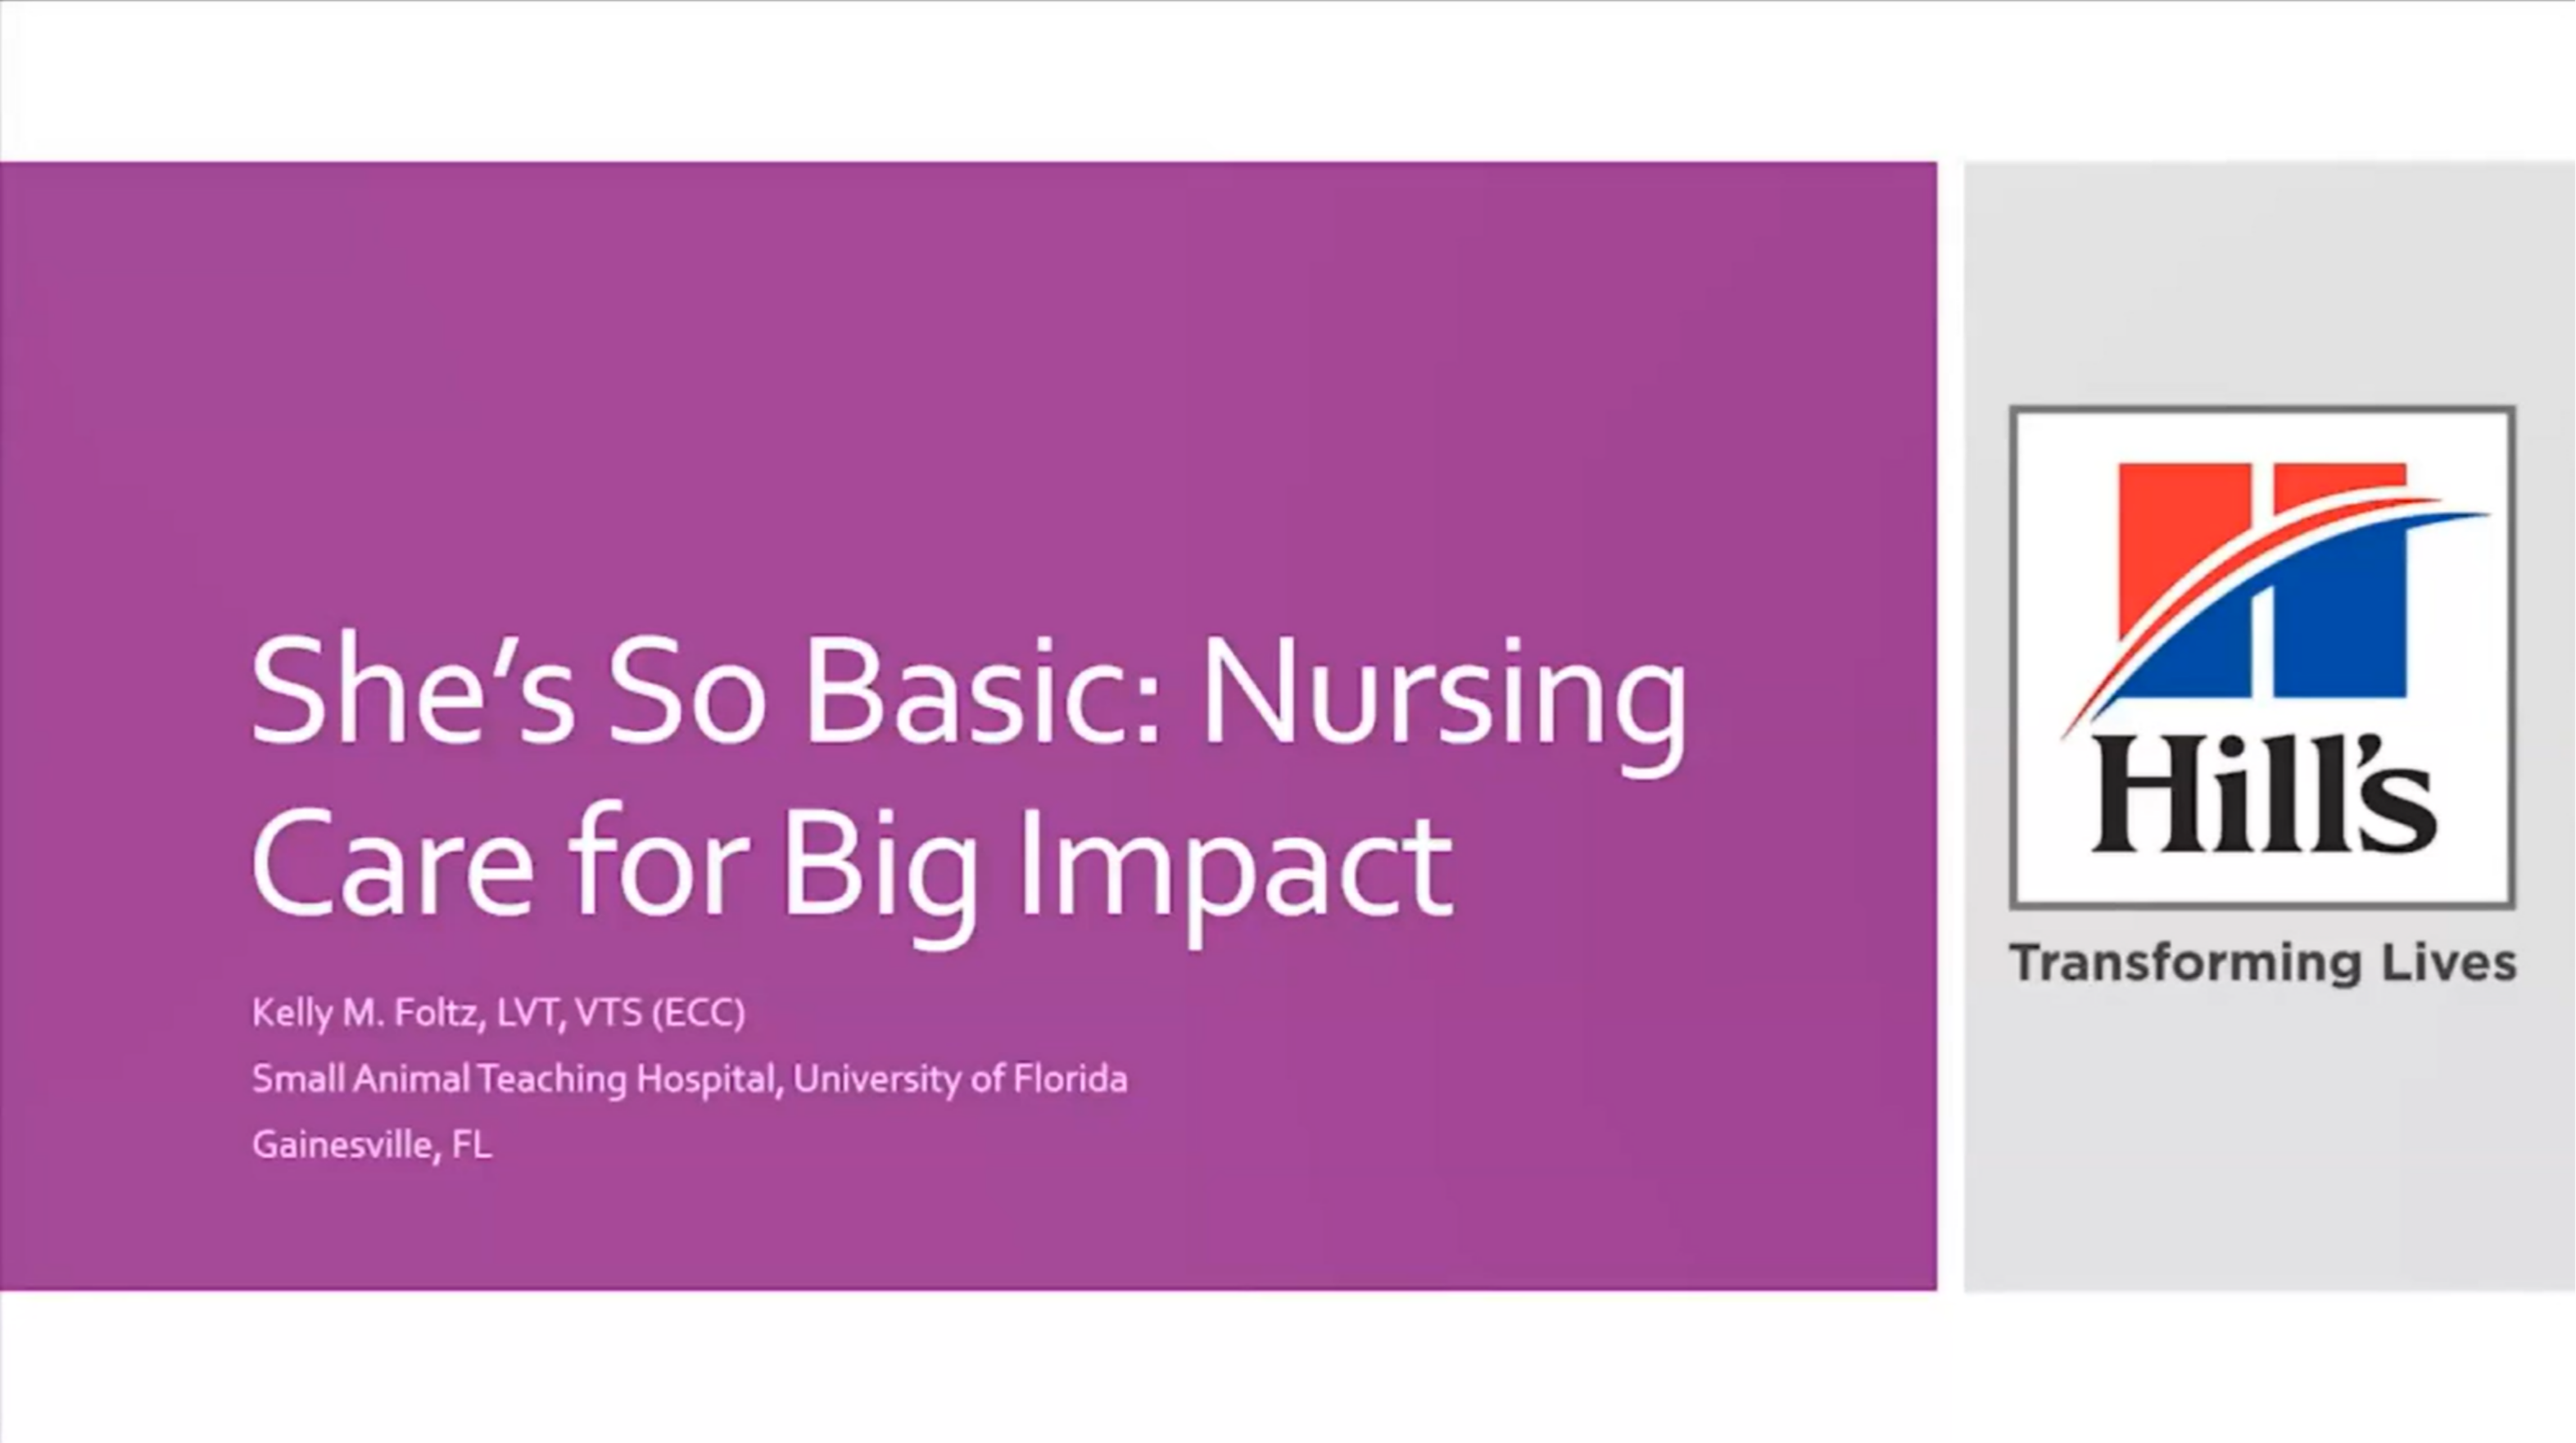 She's So Basic: "Basic" Nursing Care With Big Impact icon